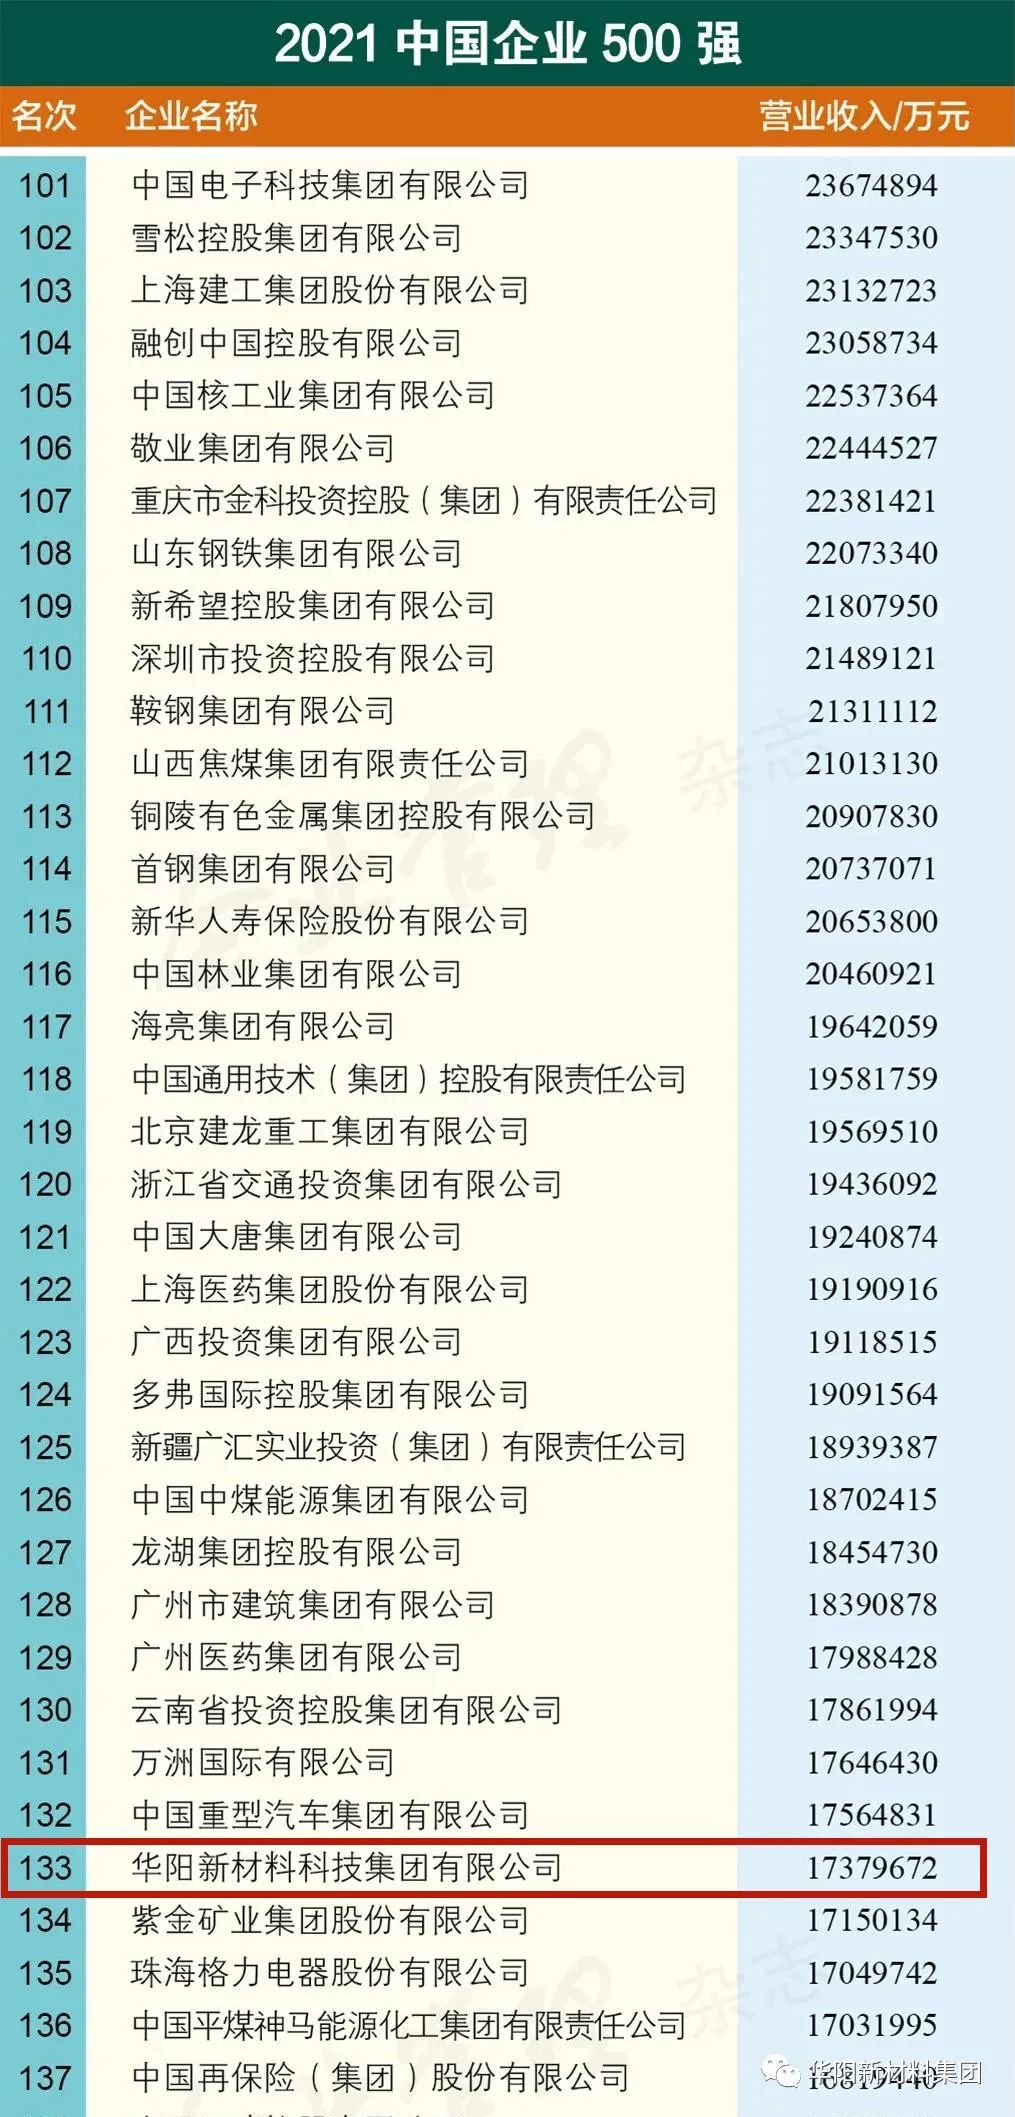 华阳集团位列2021中国企业500强第133位